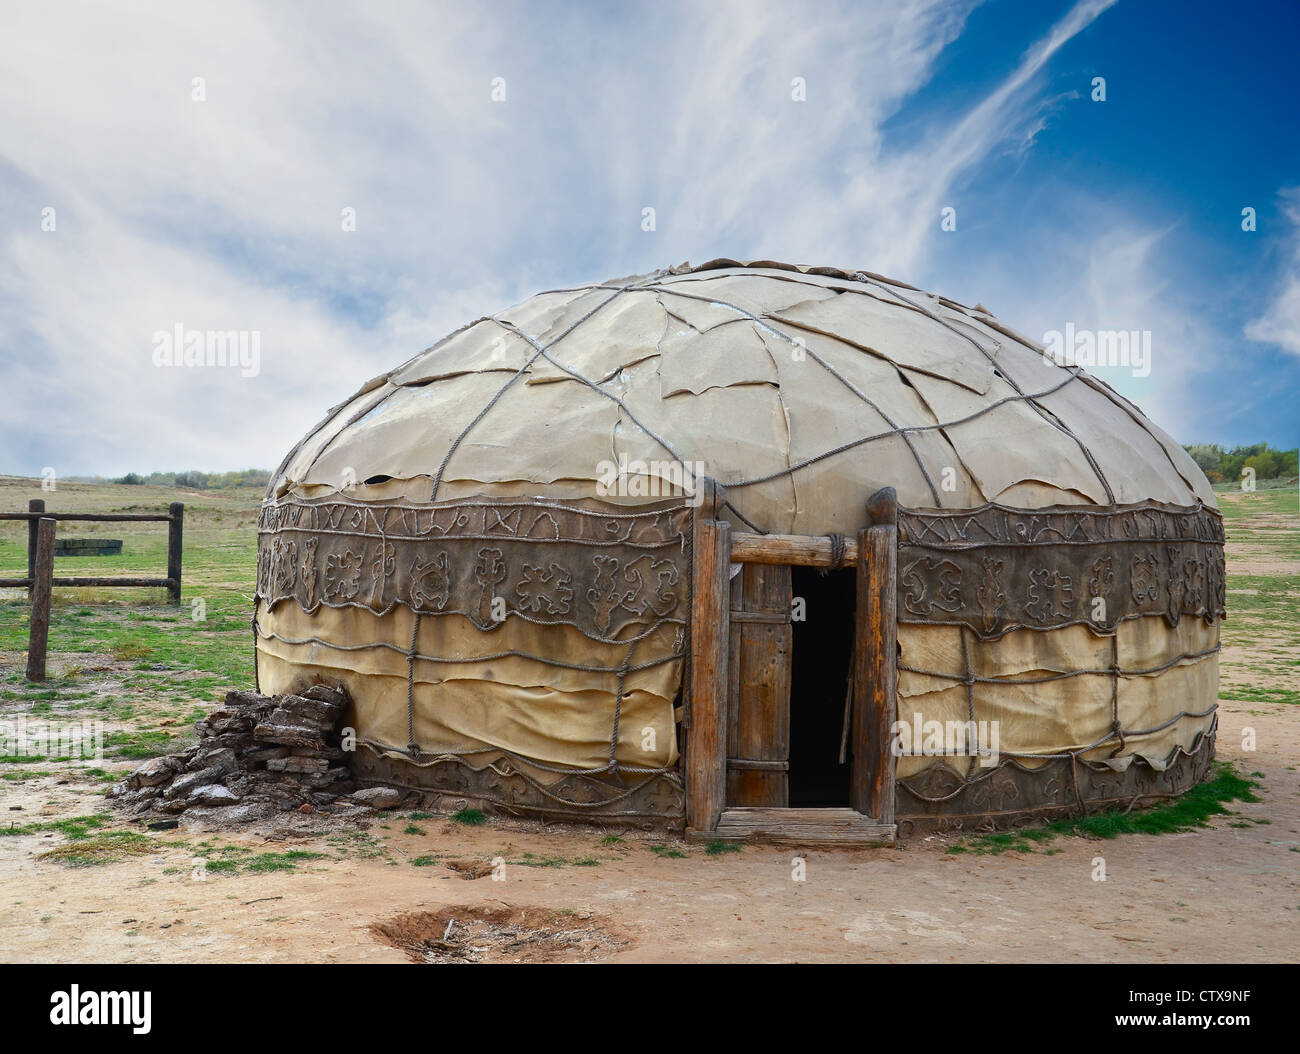 Traditional mongolian yurt made of animal skins Stock Photo